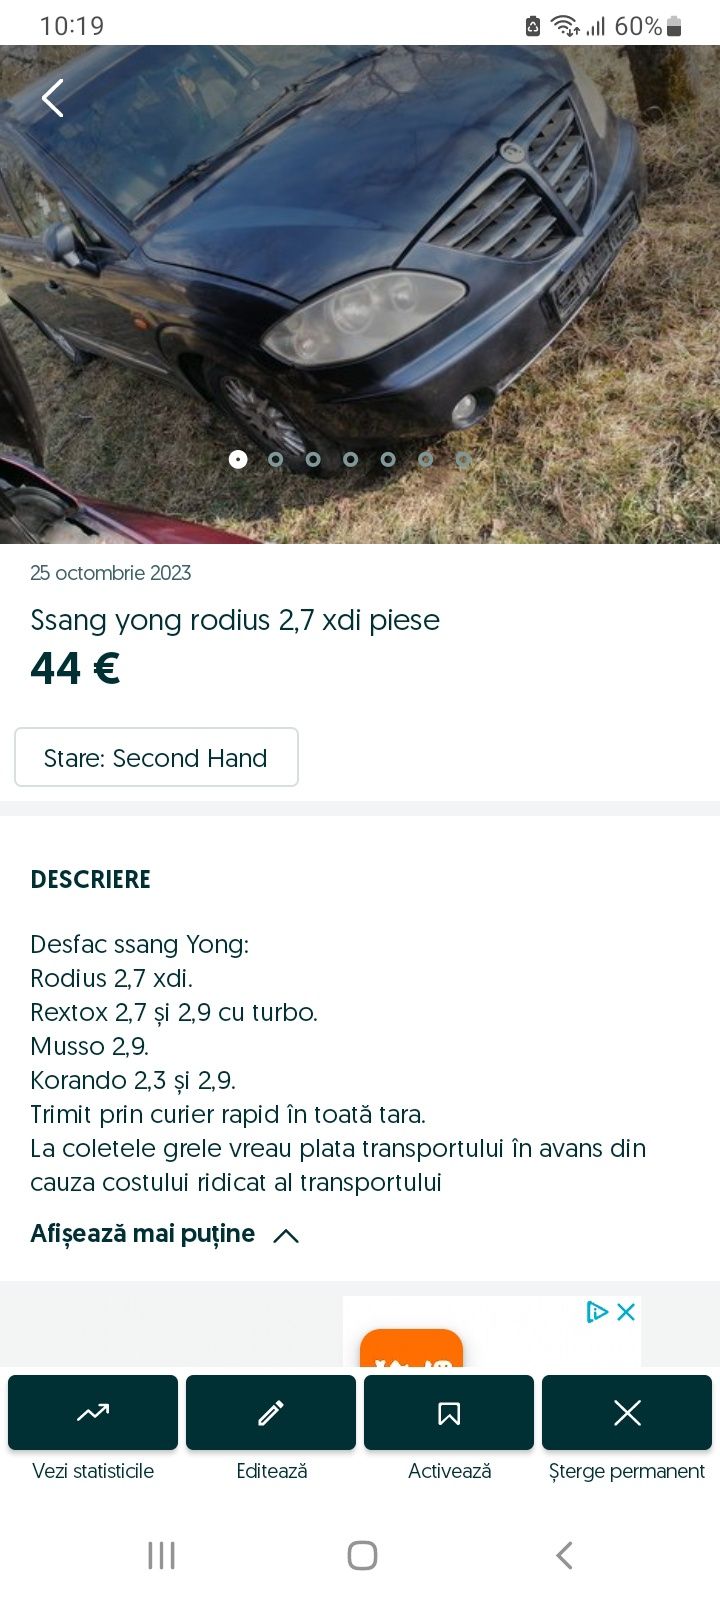 Motor cutie ssang yong: rodius ,musso, rexton și korando